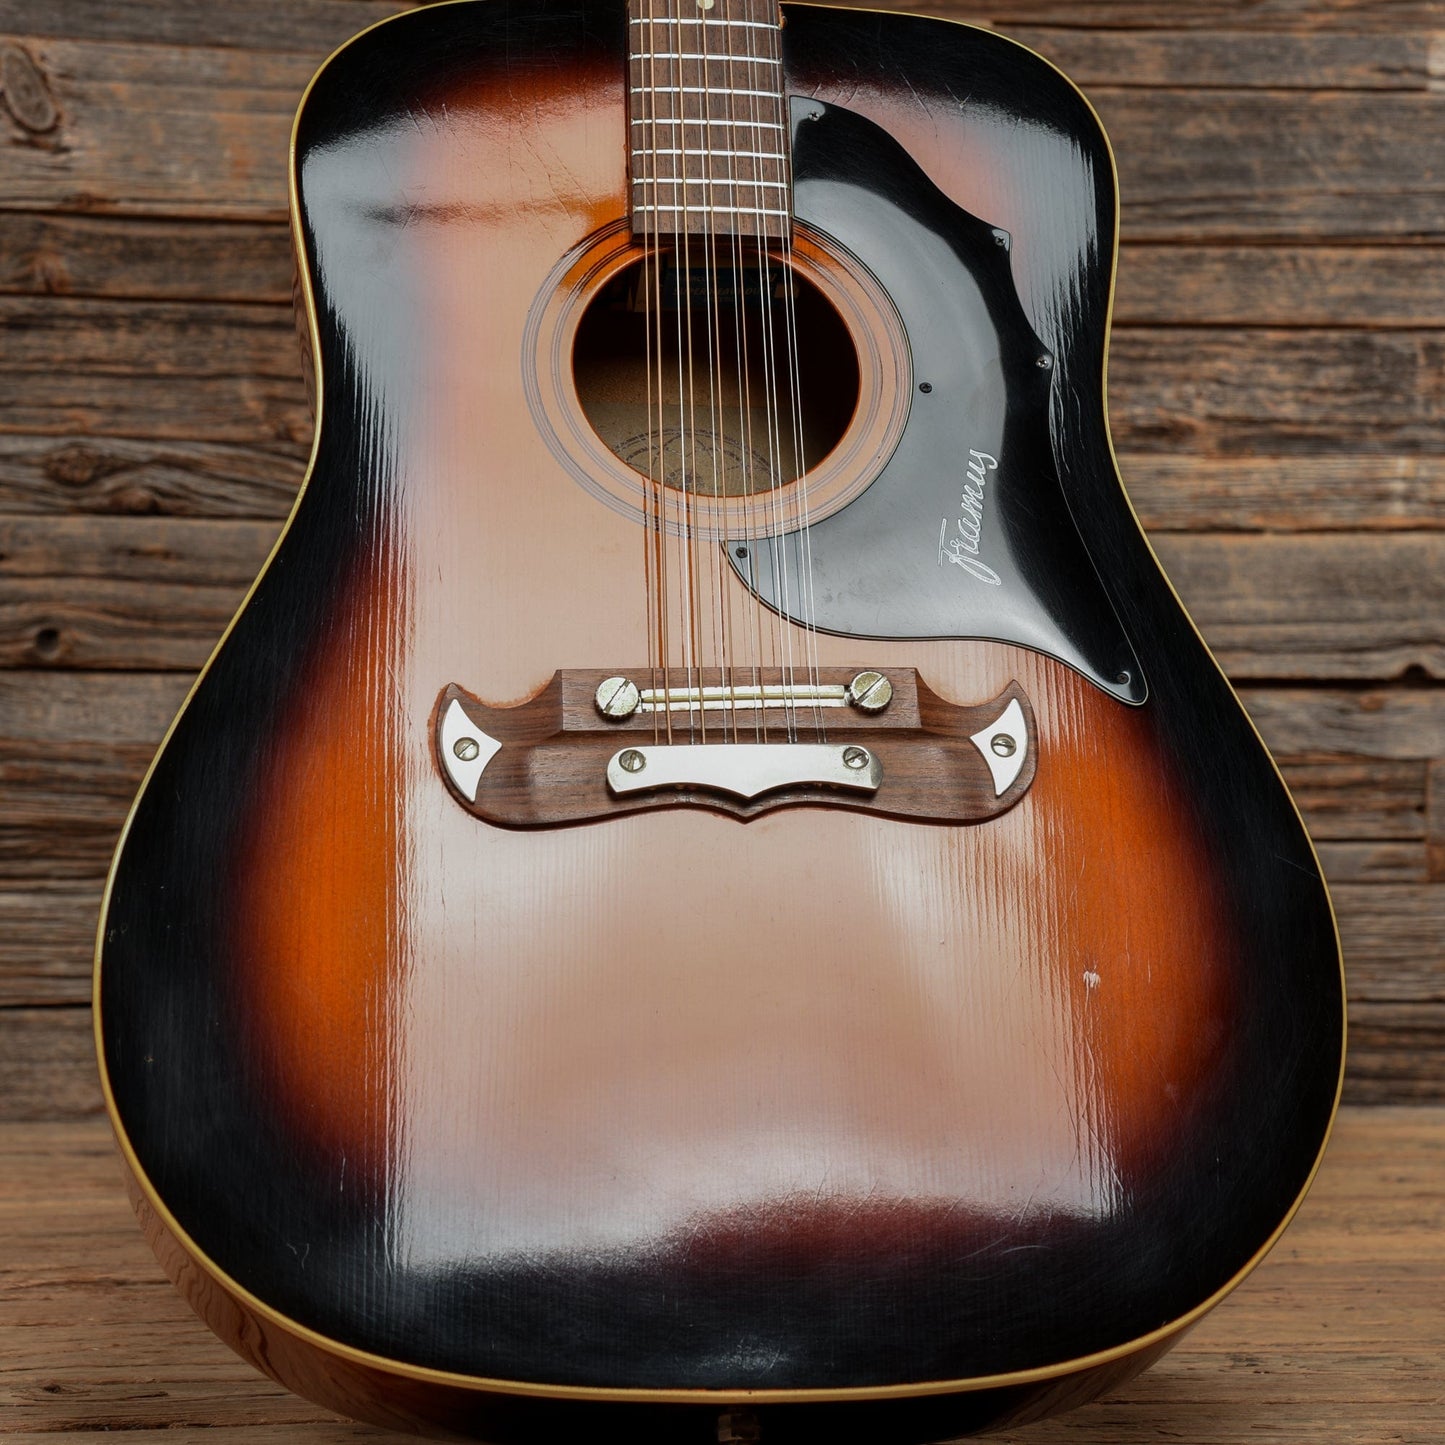 Framus Texan 51296 12 String Sunburst 1960s Acoustic Guitars / Dreadnought